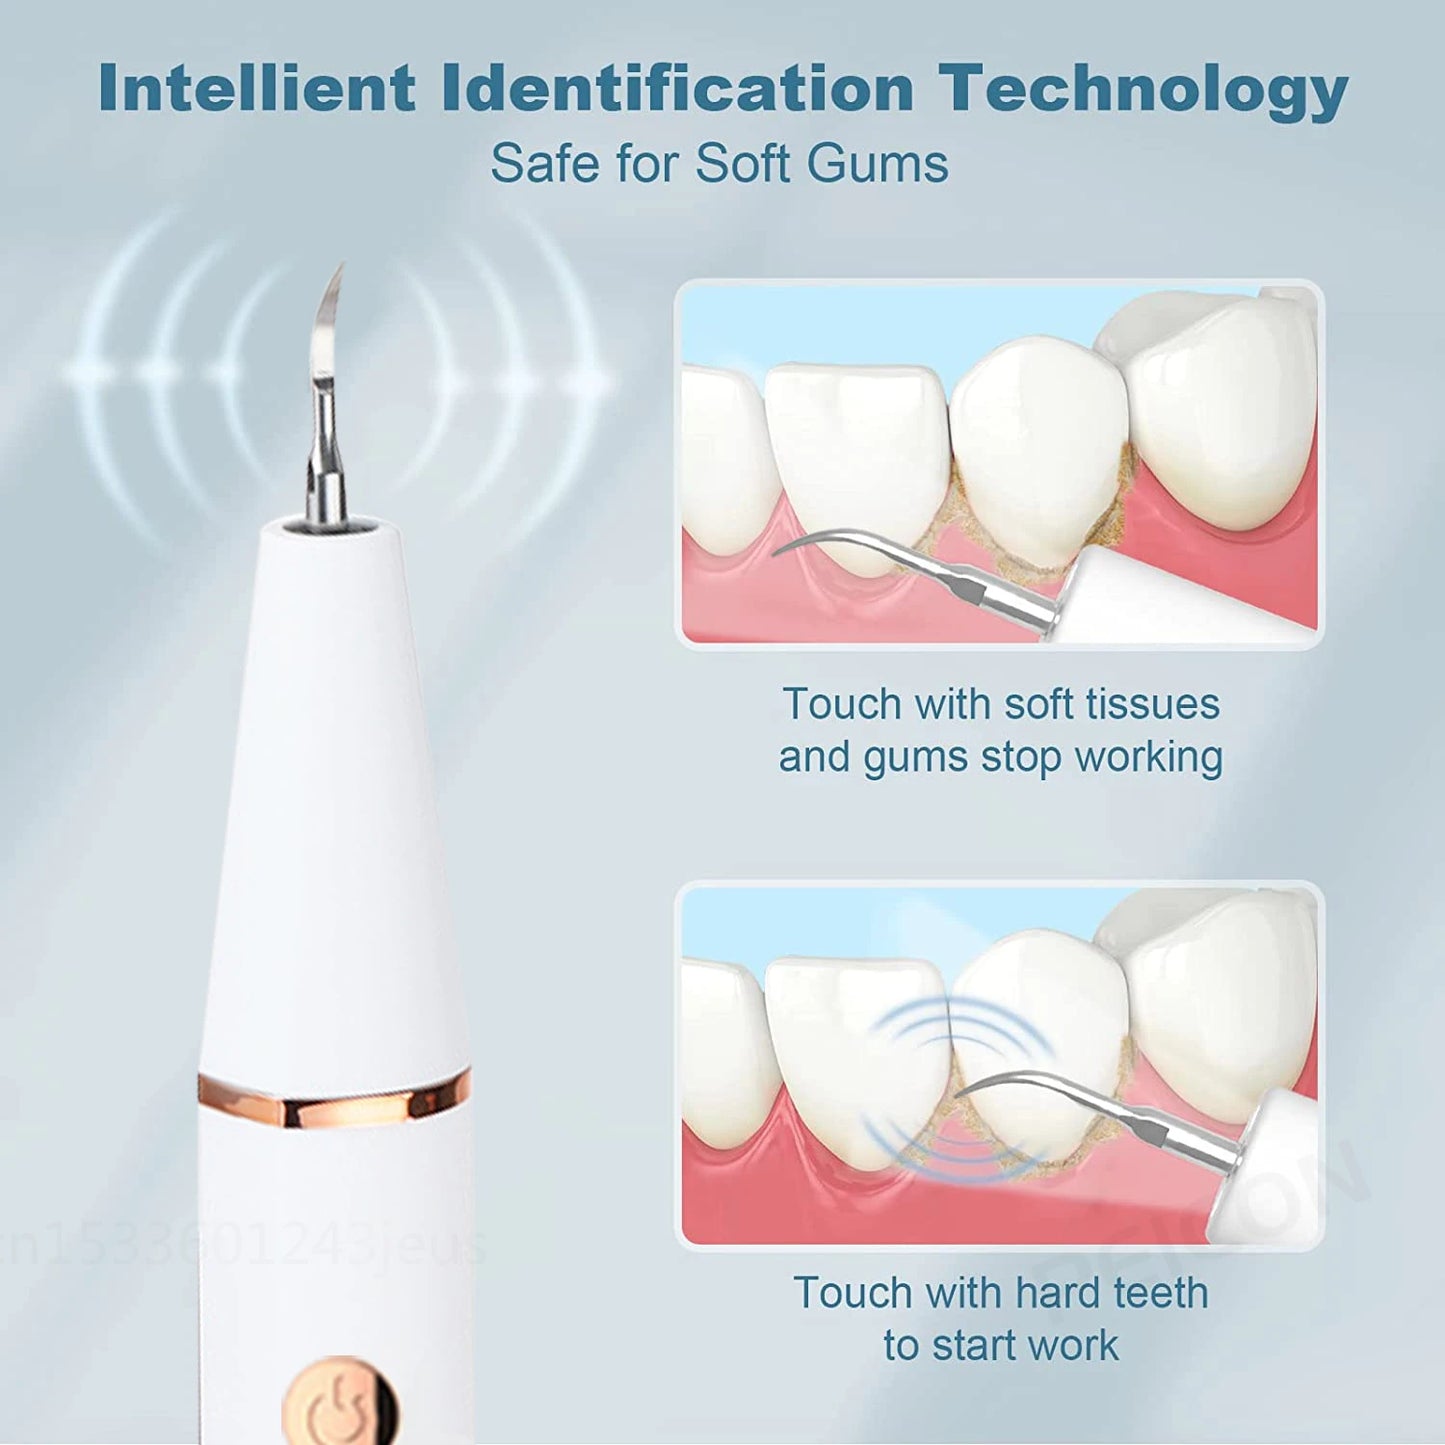 Electric Ultrasonic Dental Scaler for Dental Tartars